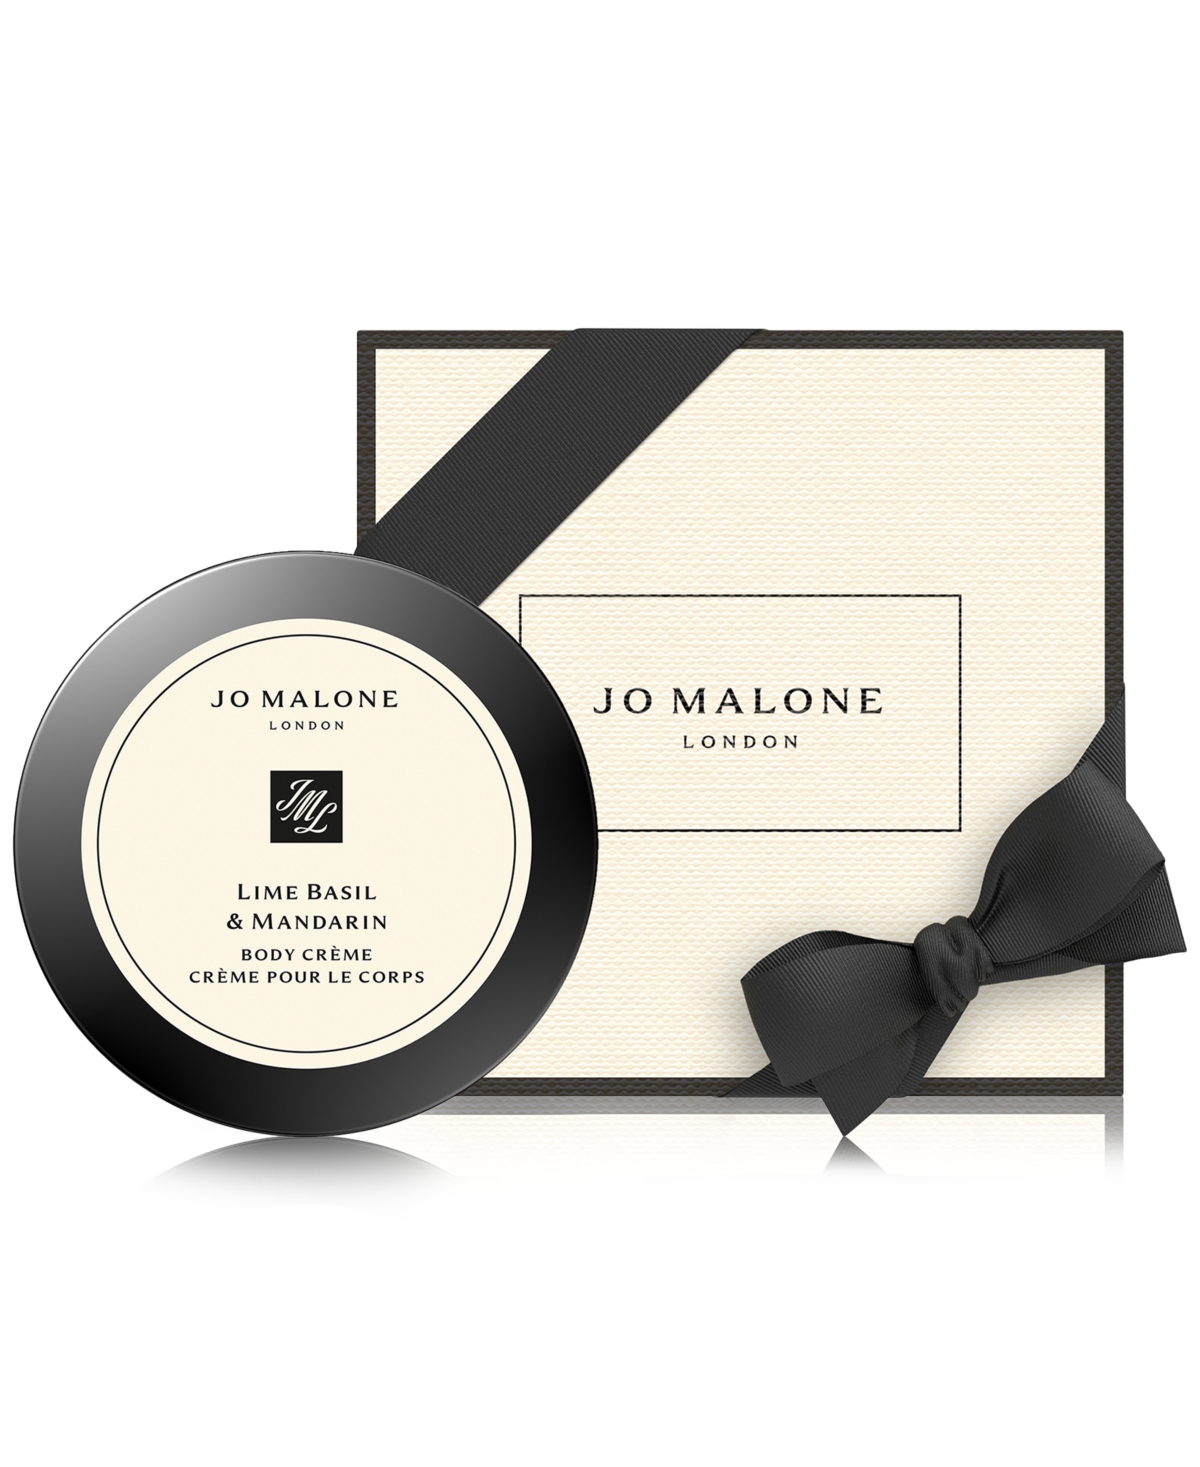 Jo Malone London Lime Basil & Mandarin Body Creme, 1.7 oz.